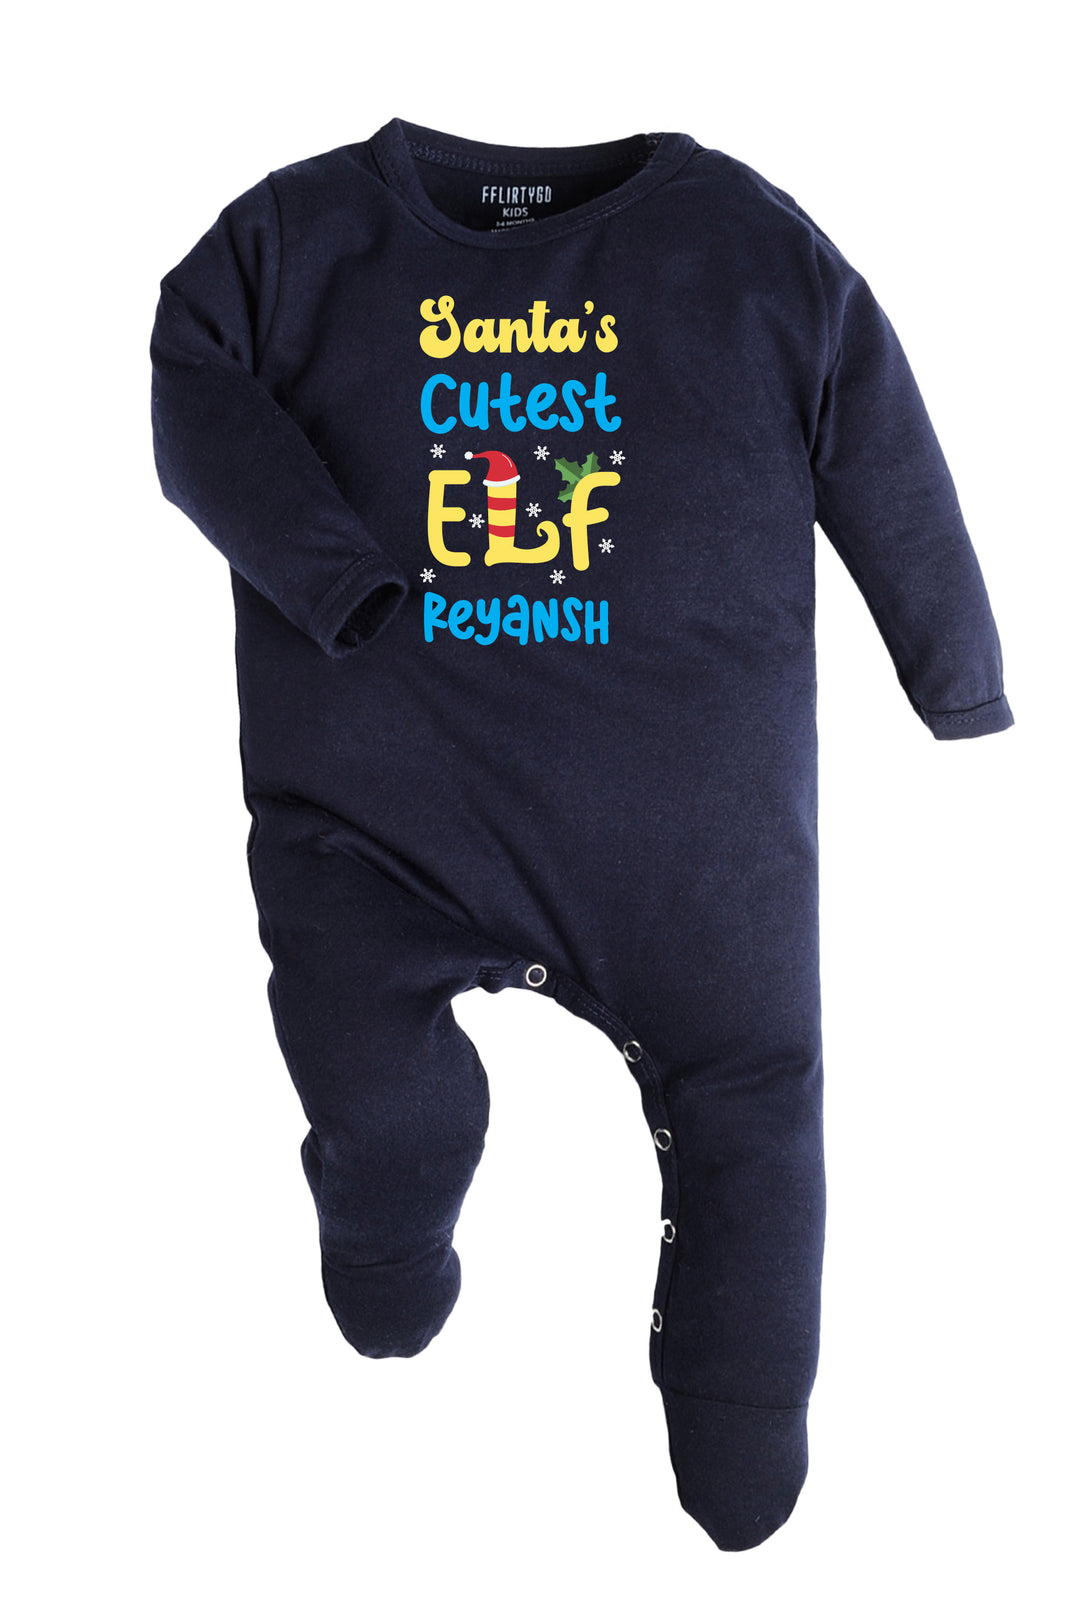 Santa Cutest elf Baby Romper | Onesies w/ Custom Name